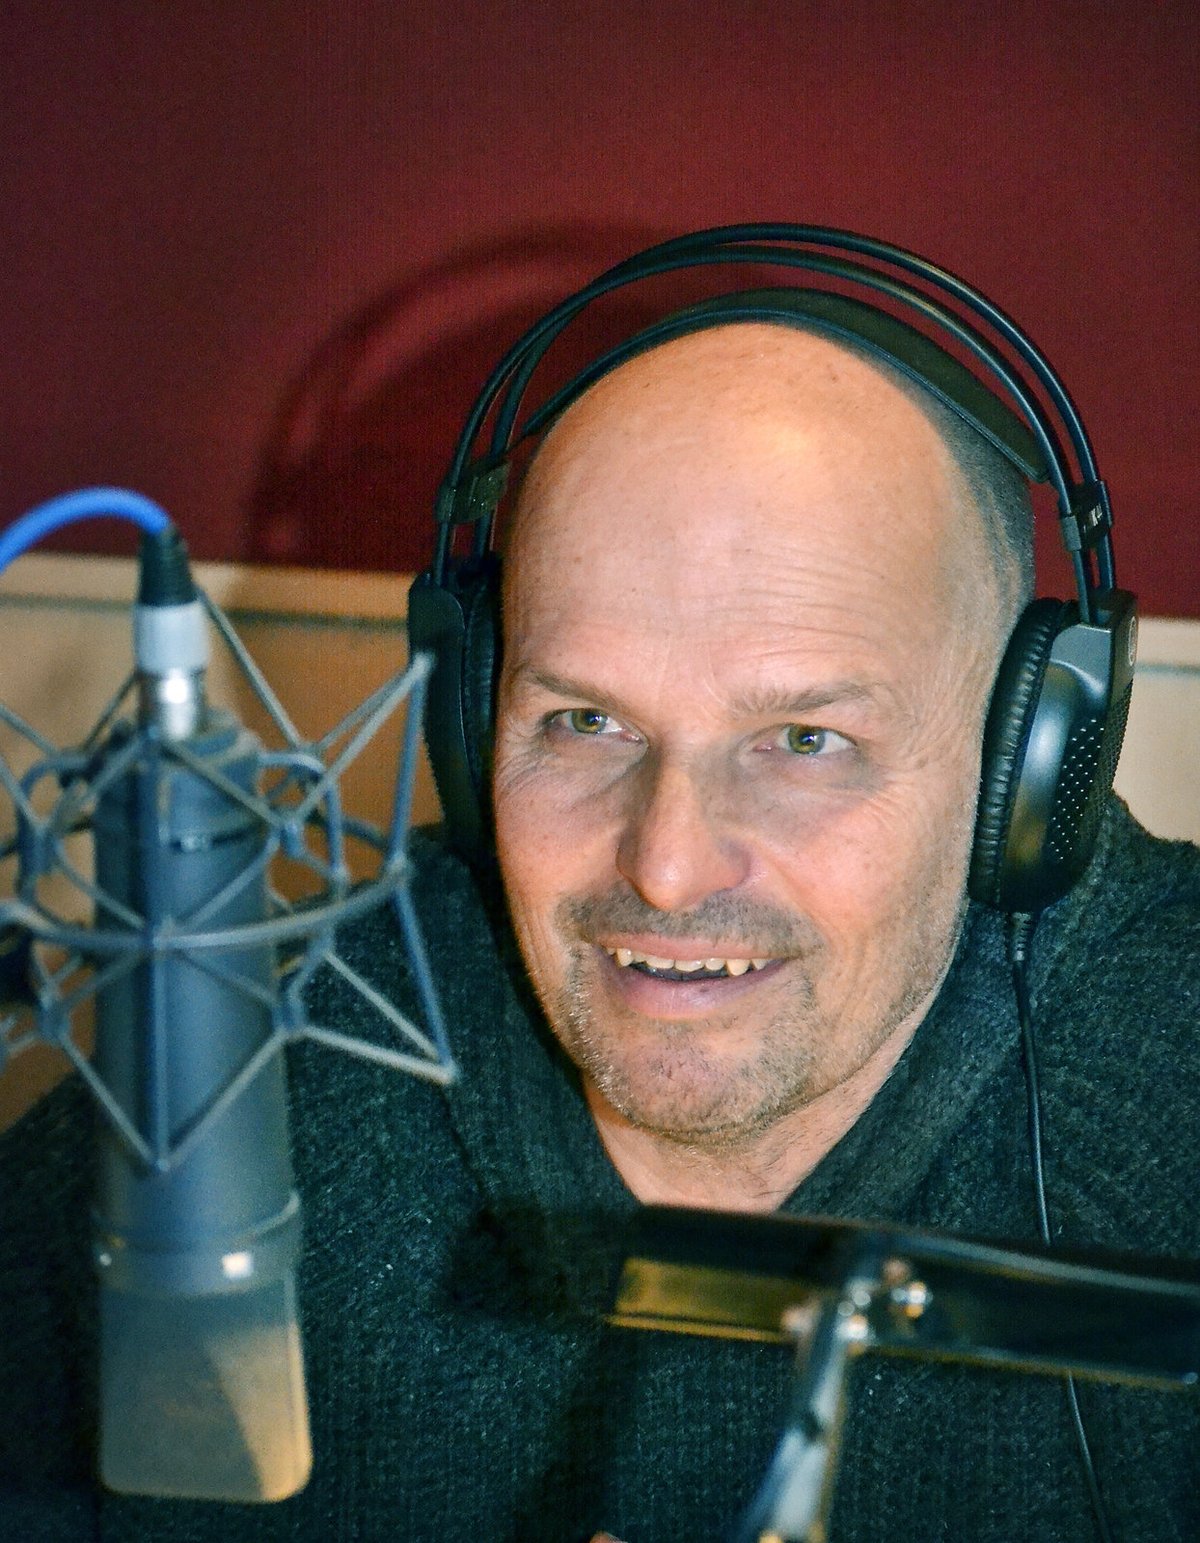 Zdeněk Pohlreich